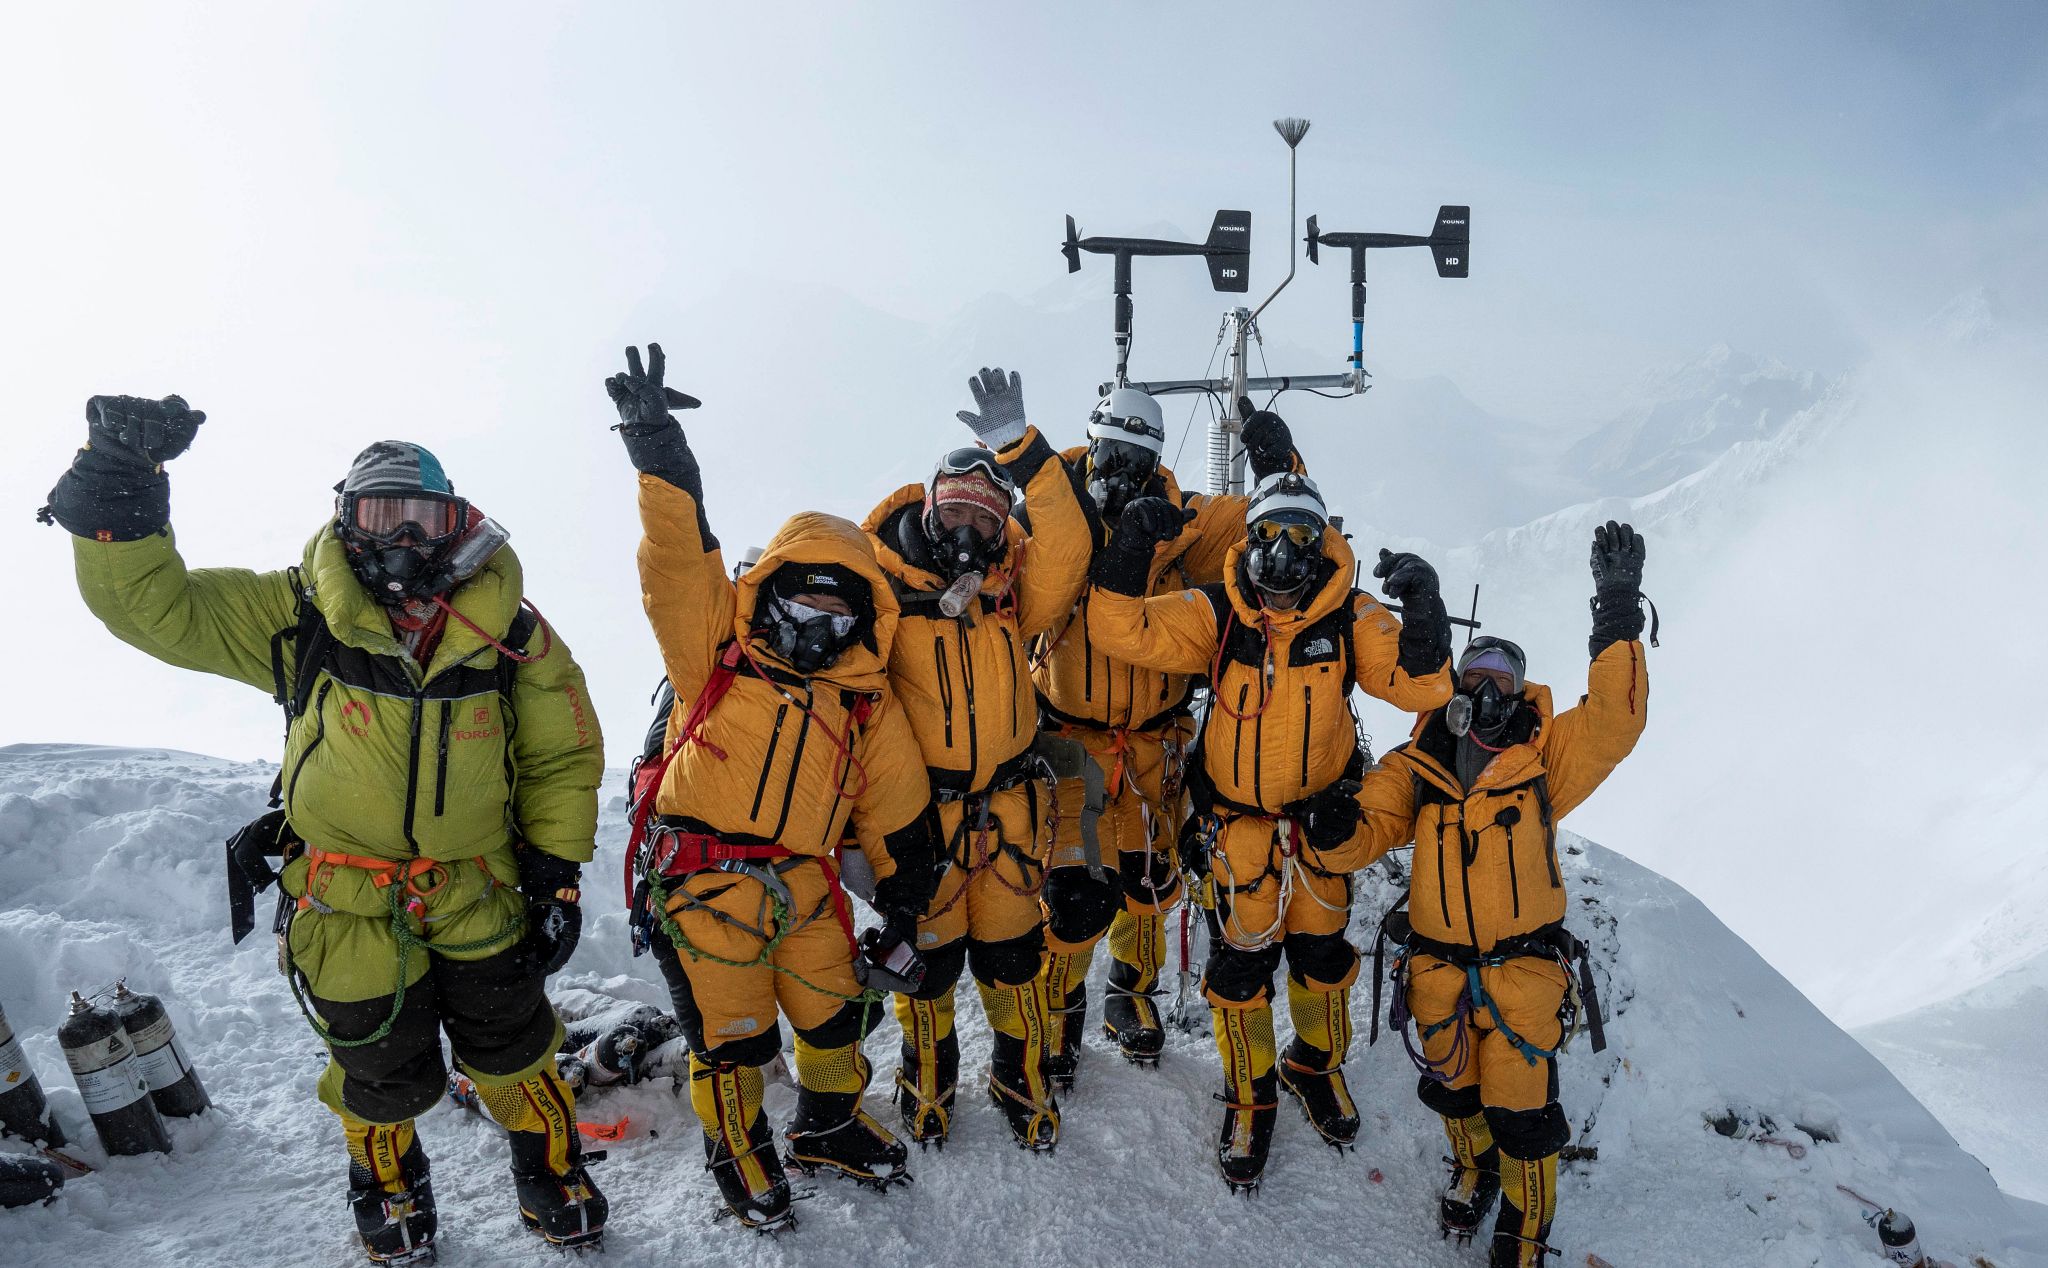 Lắp đặt thành công 5 trạm khí tượng ở "vùng đất chết" gần đỉnh Everest